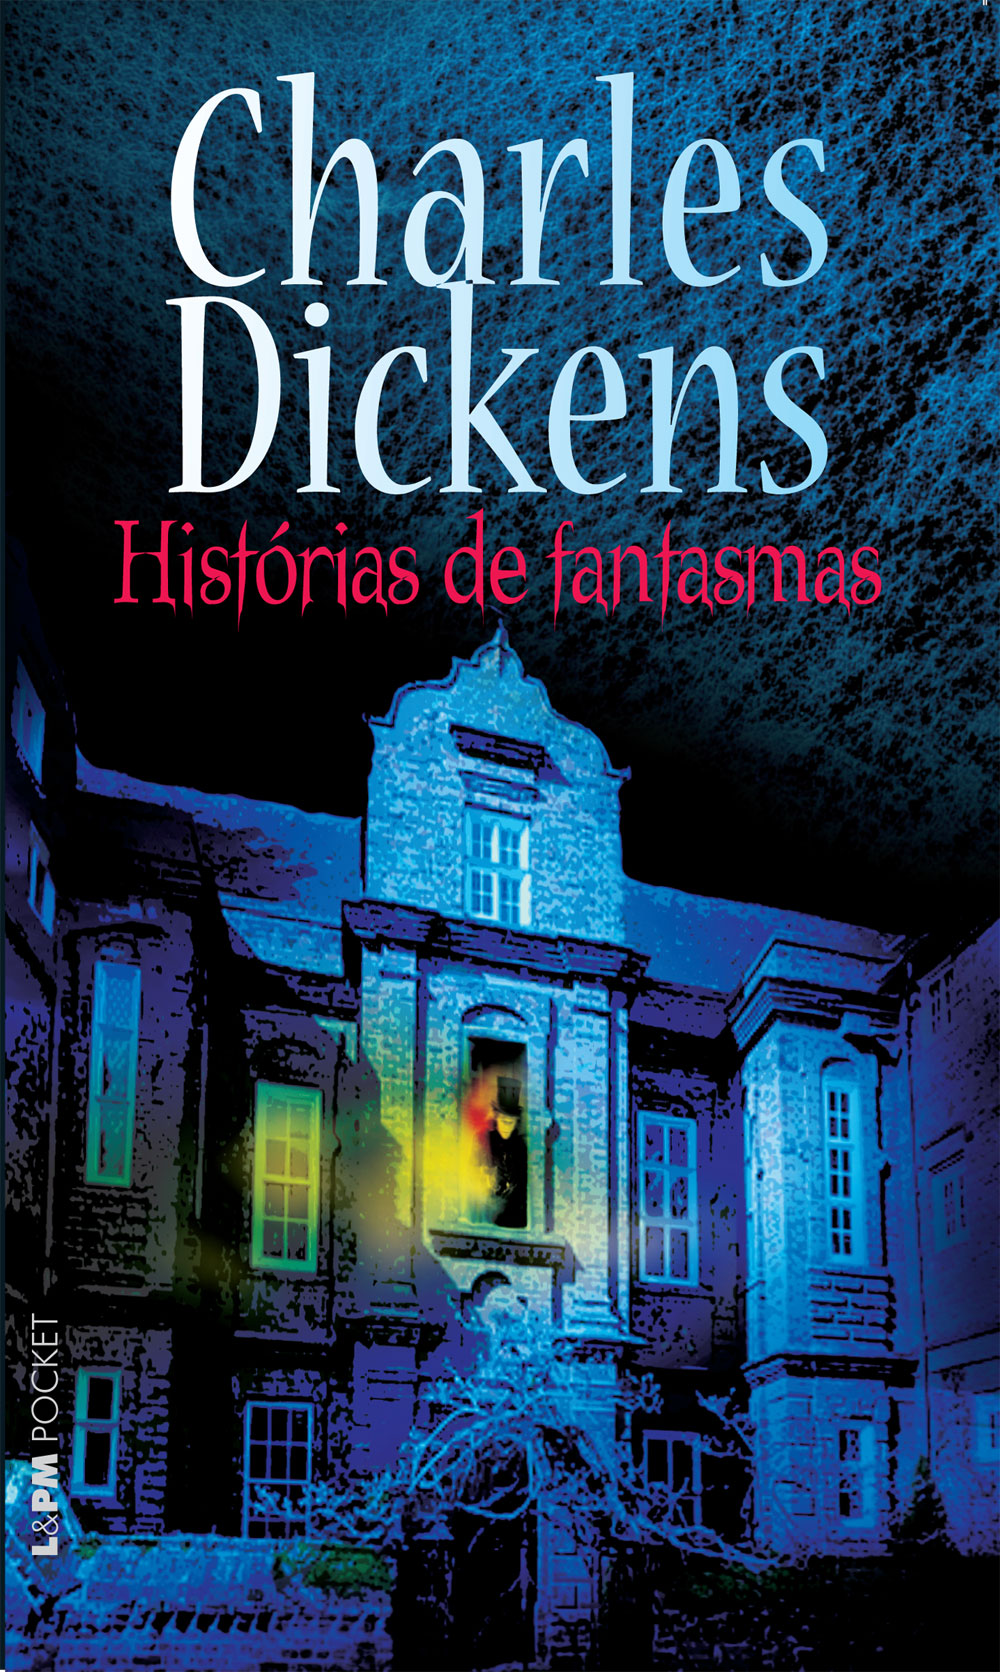 Download Histórias de Fantasmas Charles Dickens em epub mobi e pdf